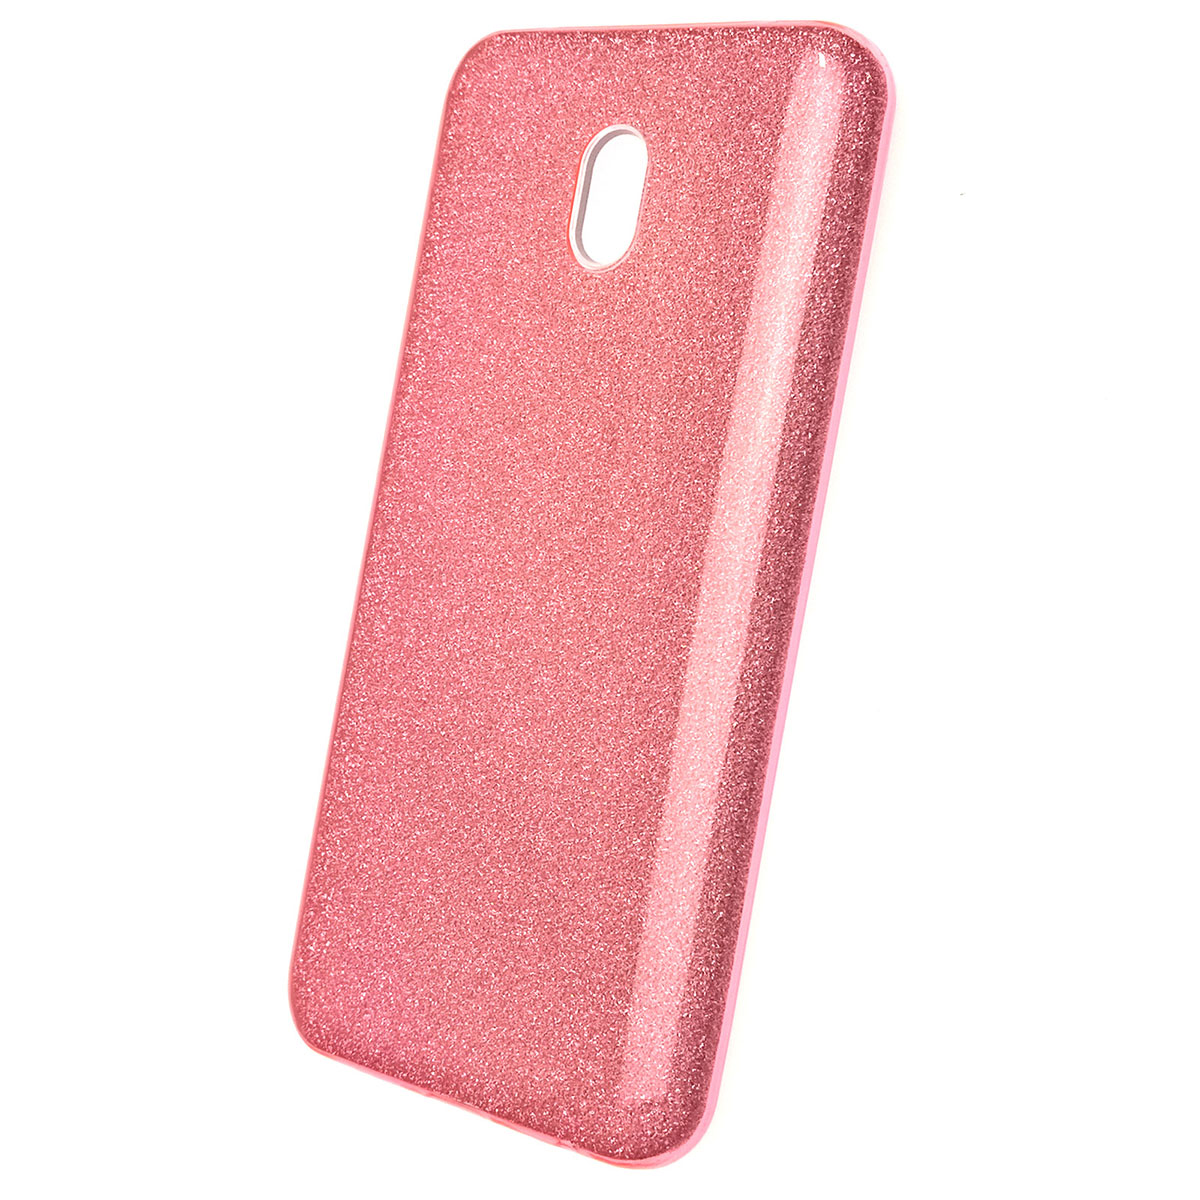 Чехол накладка для XIAOMI Redmi 8A, силикон, блестки, цвет розовый.